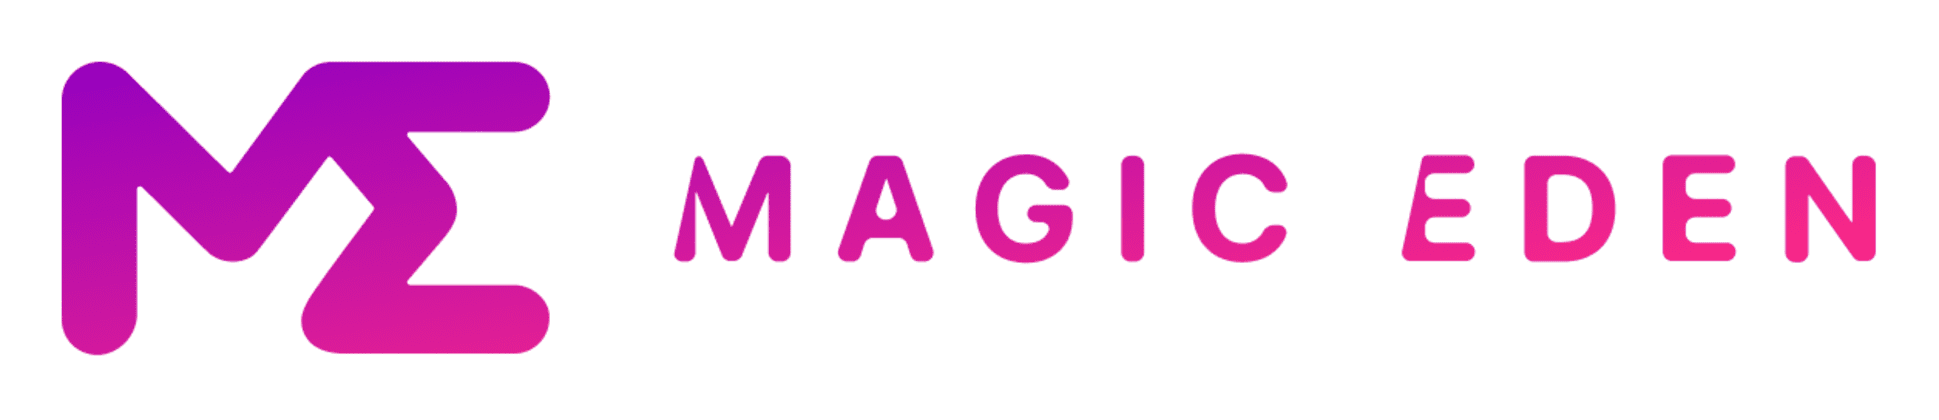 Magic eden logo freelogovectors.net 